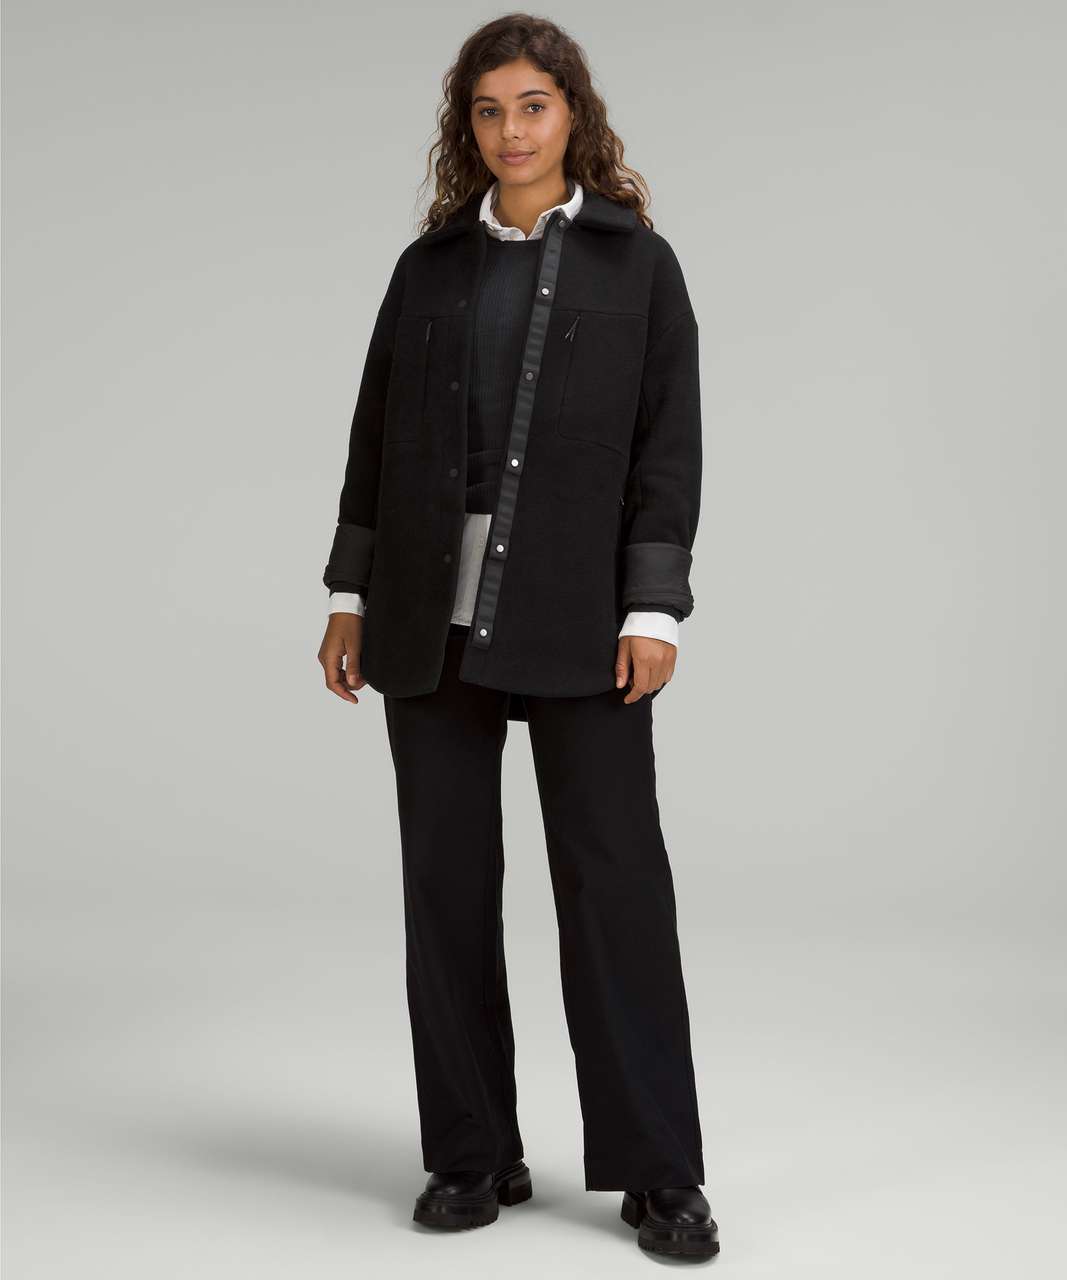 Lululemon Insulated Wool Shirt Jacket - Black